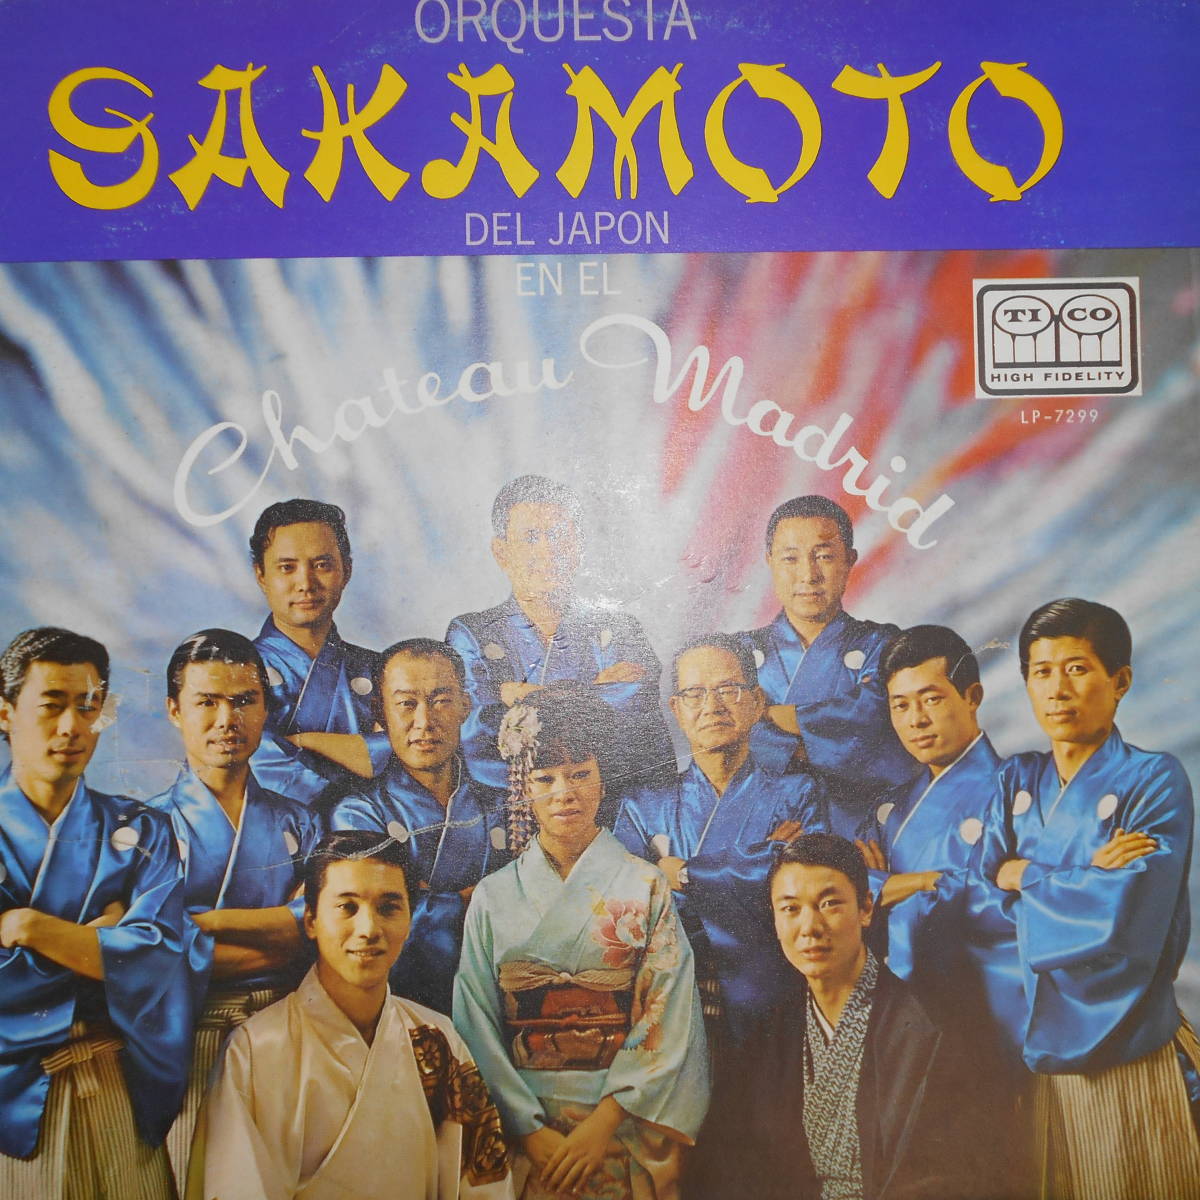 その他 ORQUESTA SAKAMOTO DEL JAPON AT THE CHATEAU MADRID LP